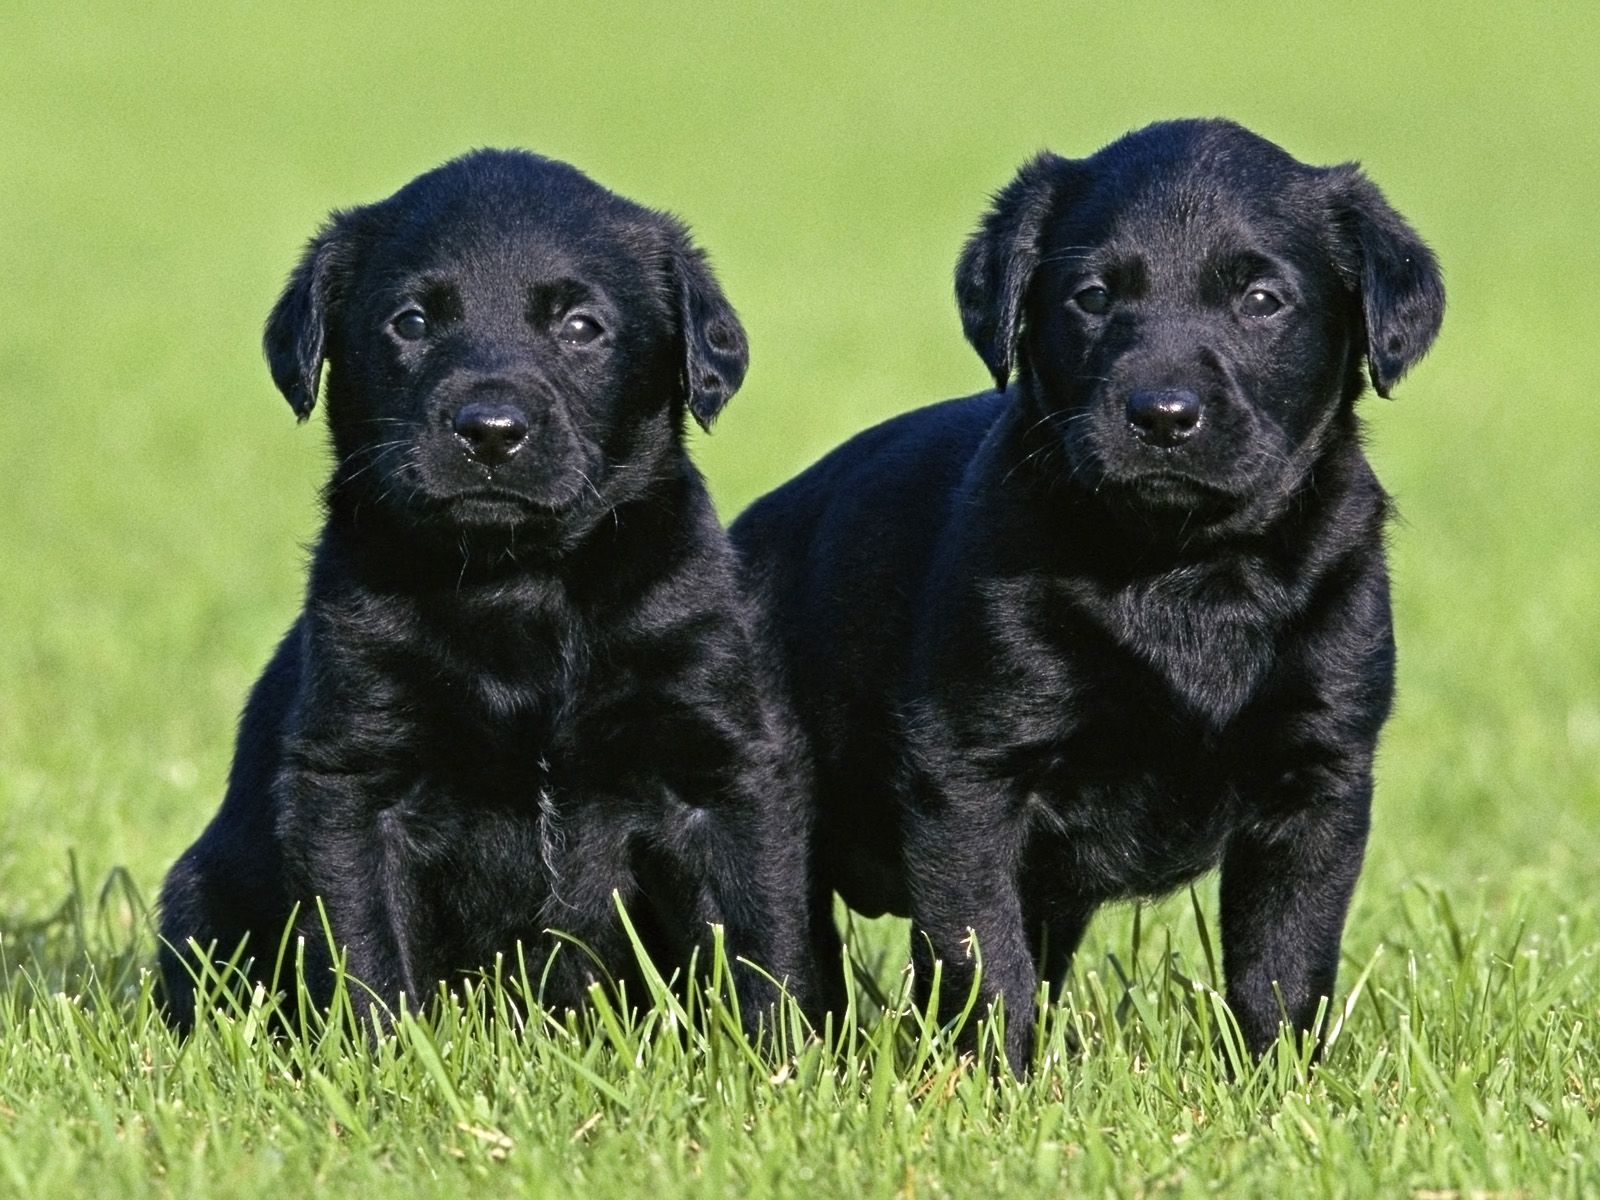 Black Labrador Puppies - wallpaper.